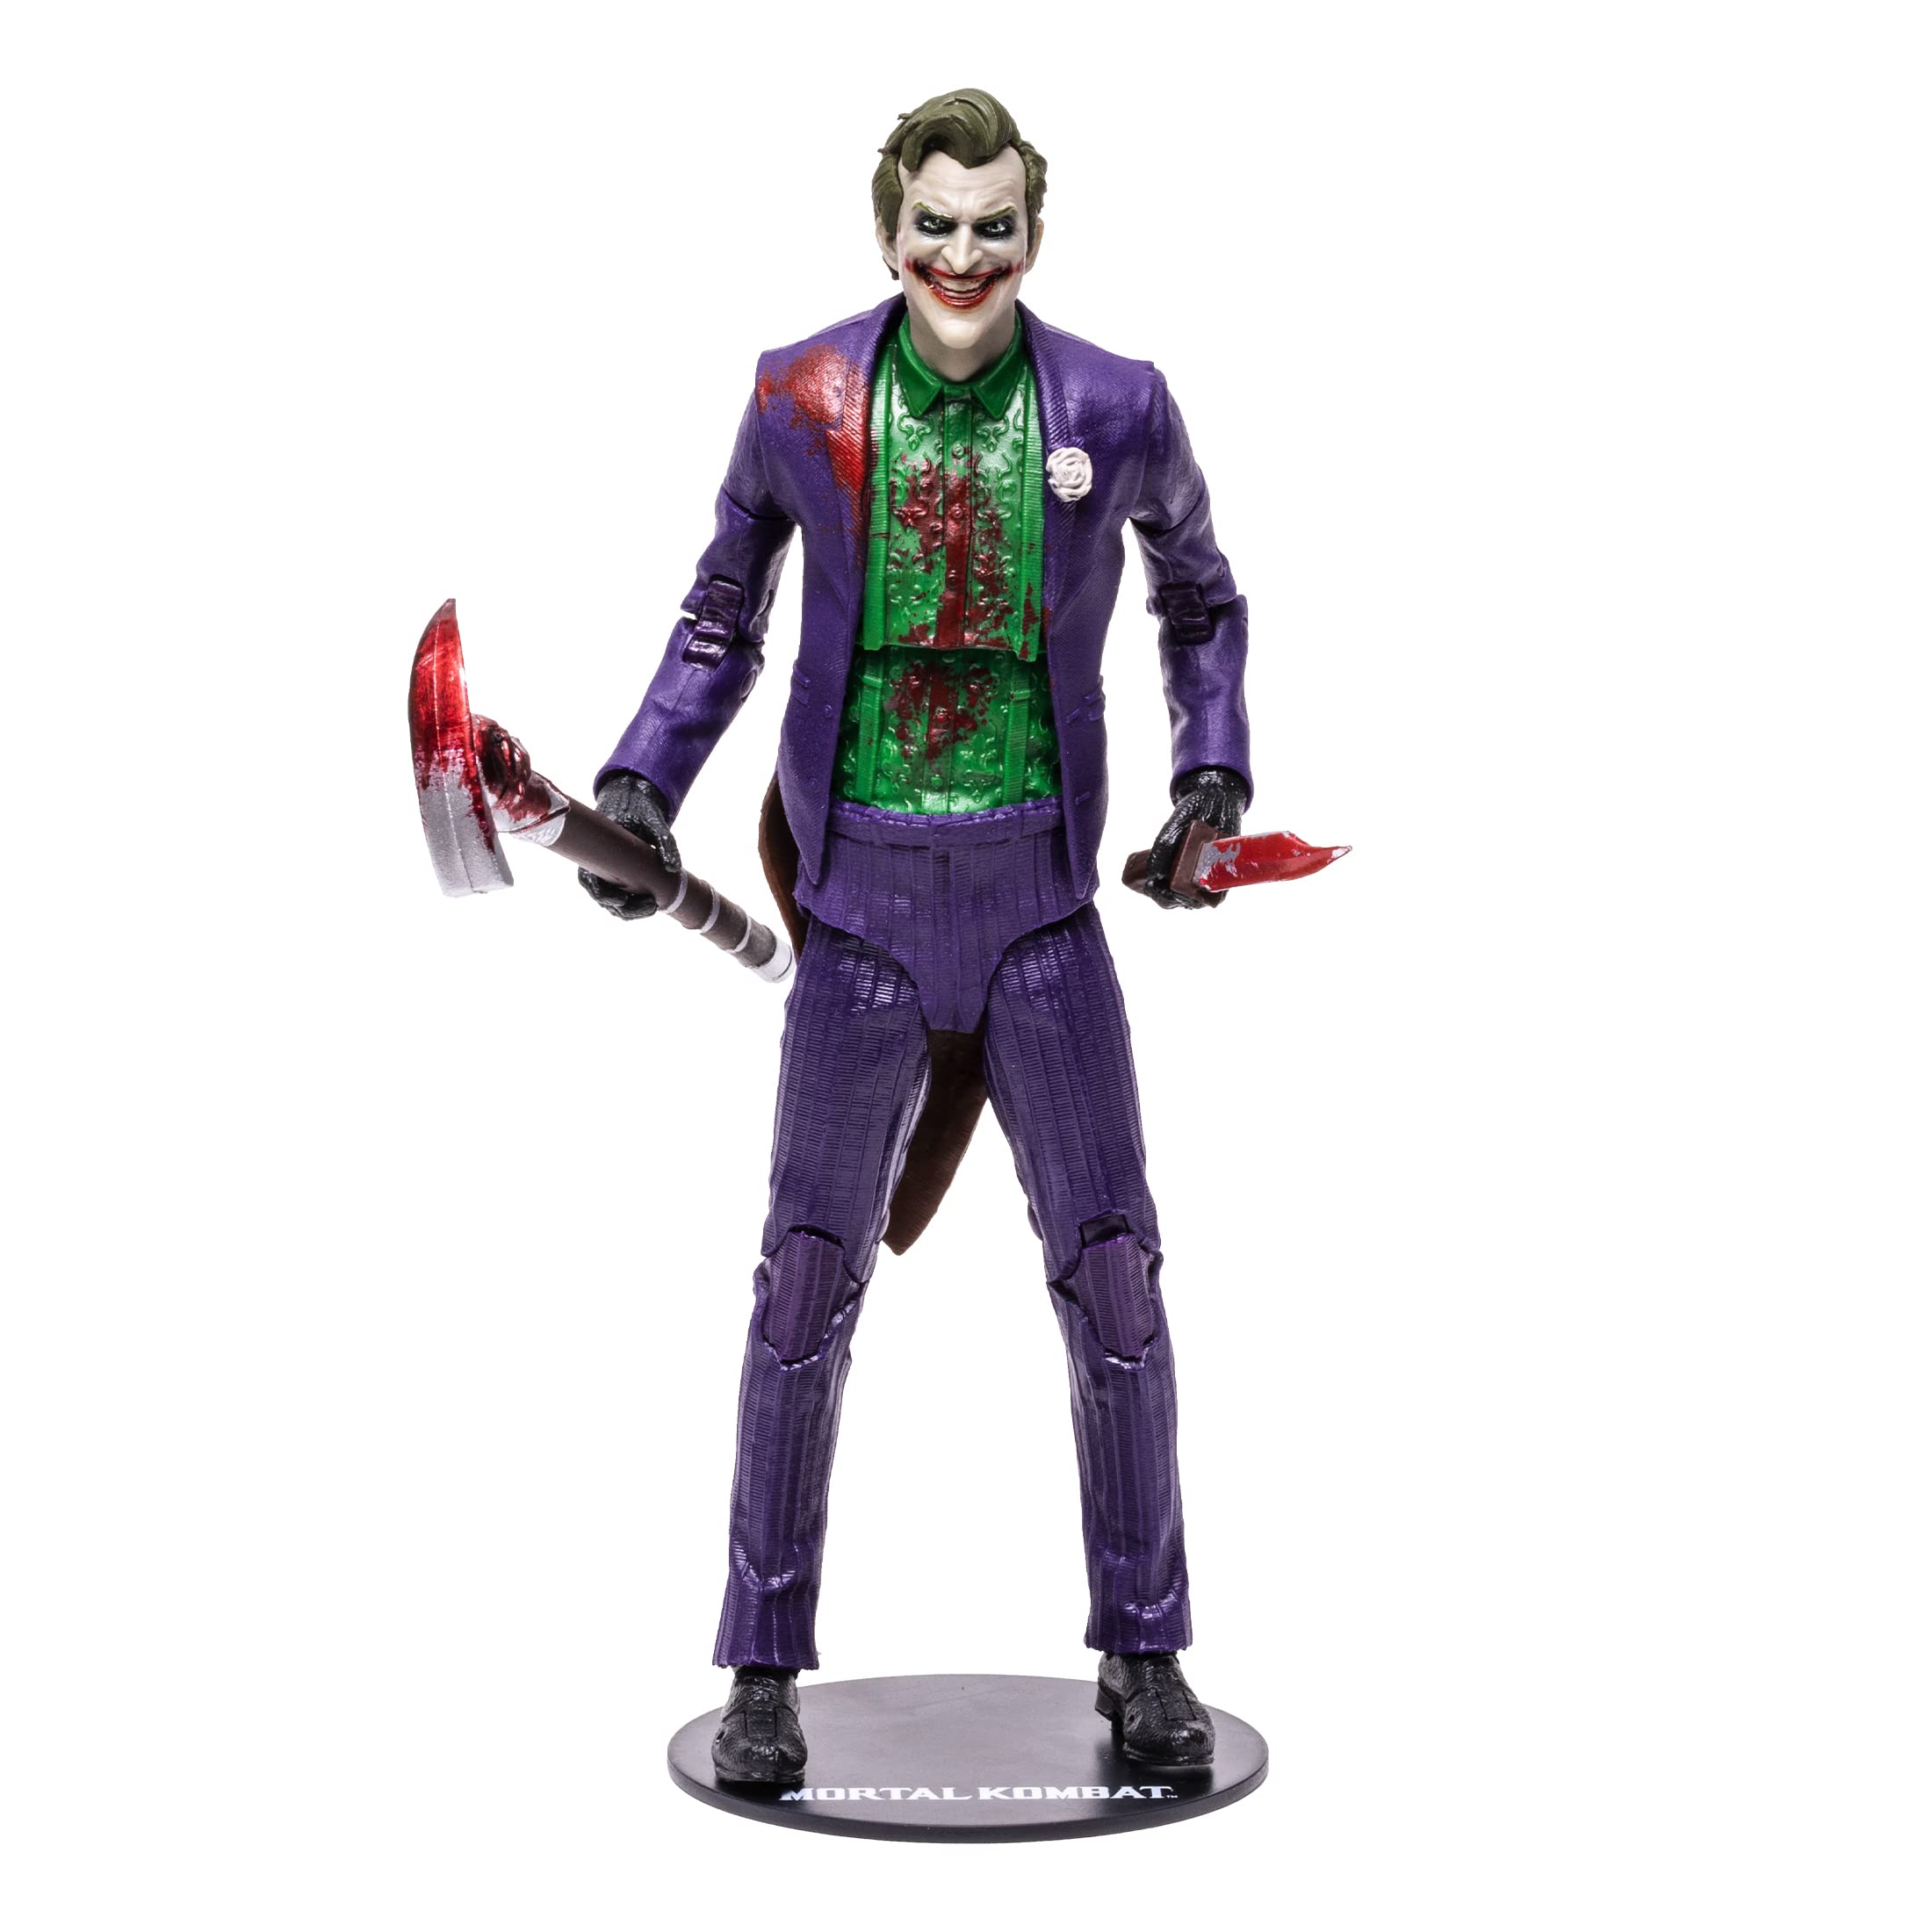 McFarlane Toys Mortal Kombat The Joker (Bloody) 7